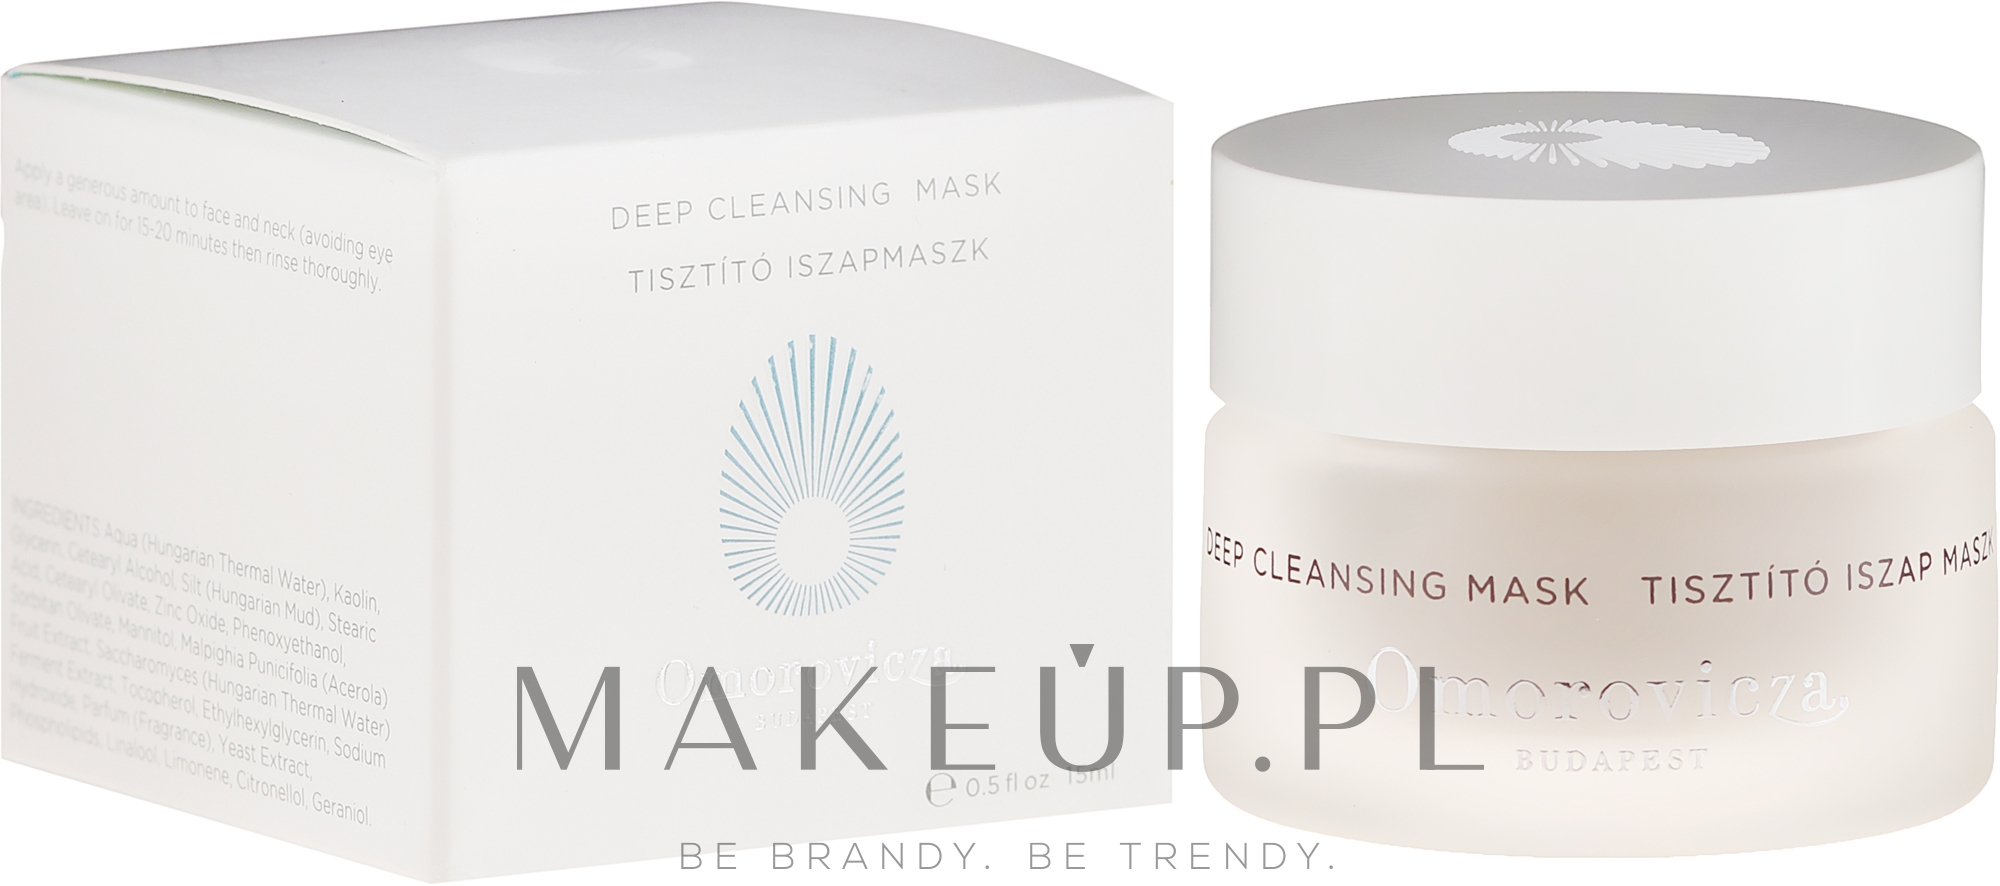 Oczyszczająca maska do twarzy - Omorovicza Deep Cleansing Mask (miniprodukt) — Zdjęcie 15 ml